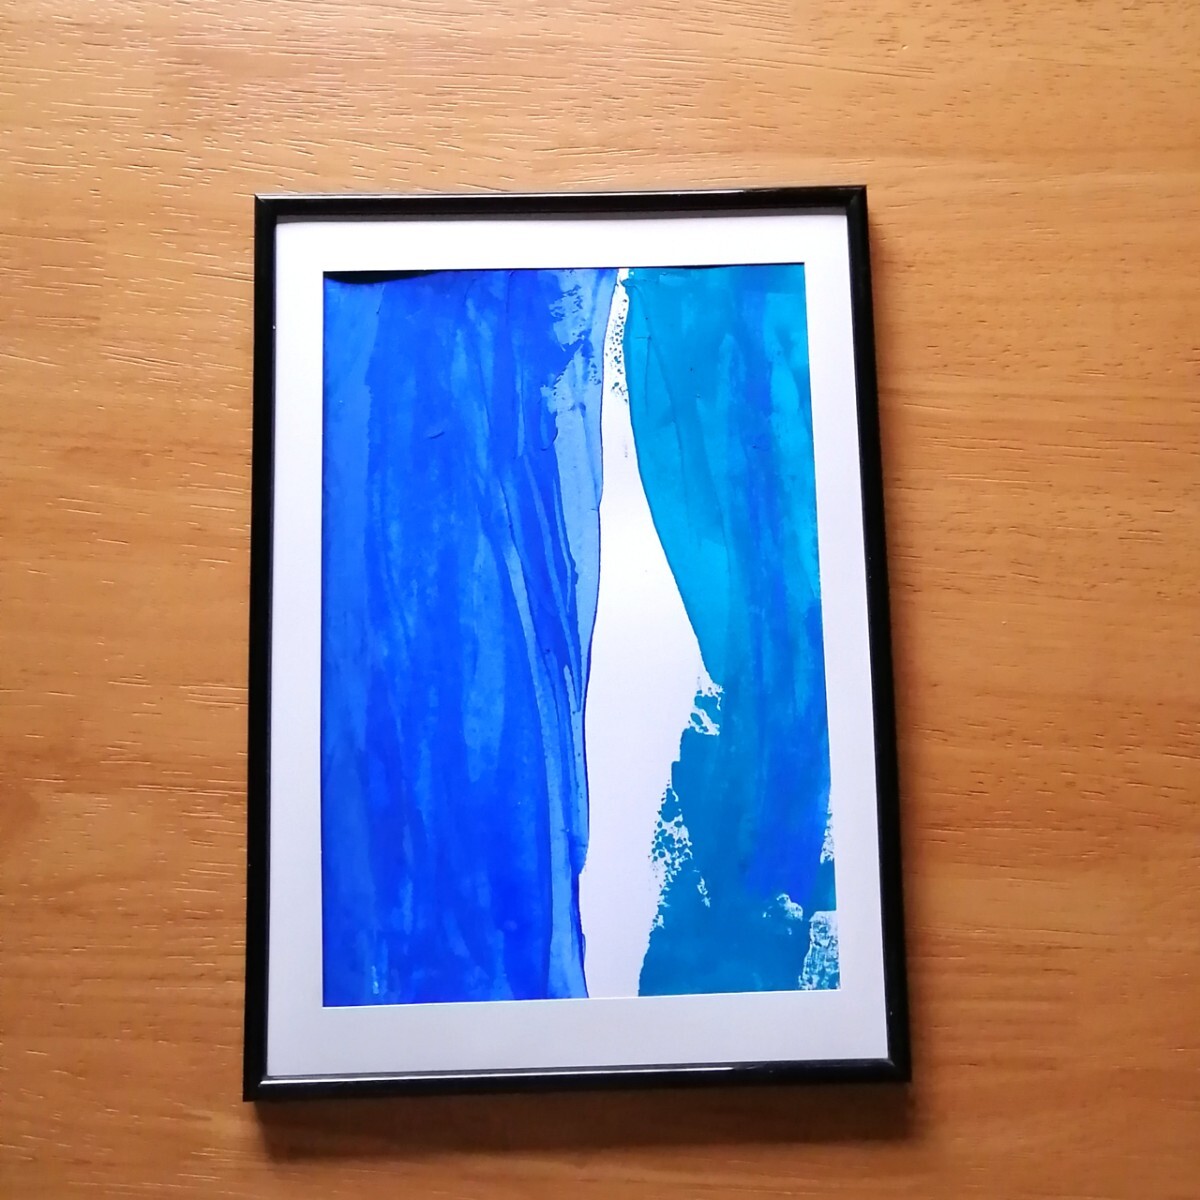 원본 그림 [파란색] 추상적인 인테리어 그림, 그림, 손으로 그린, 아트 패널, 파란색, 현대 미술, 삽화, 그림, 아크릴, 깊은 상처